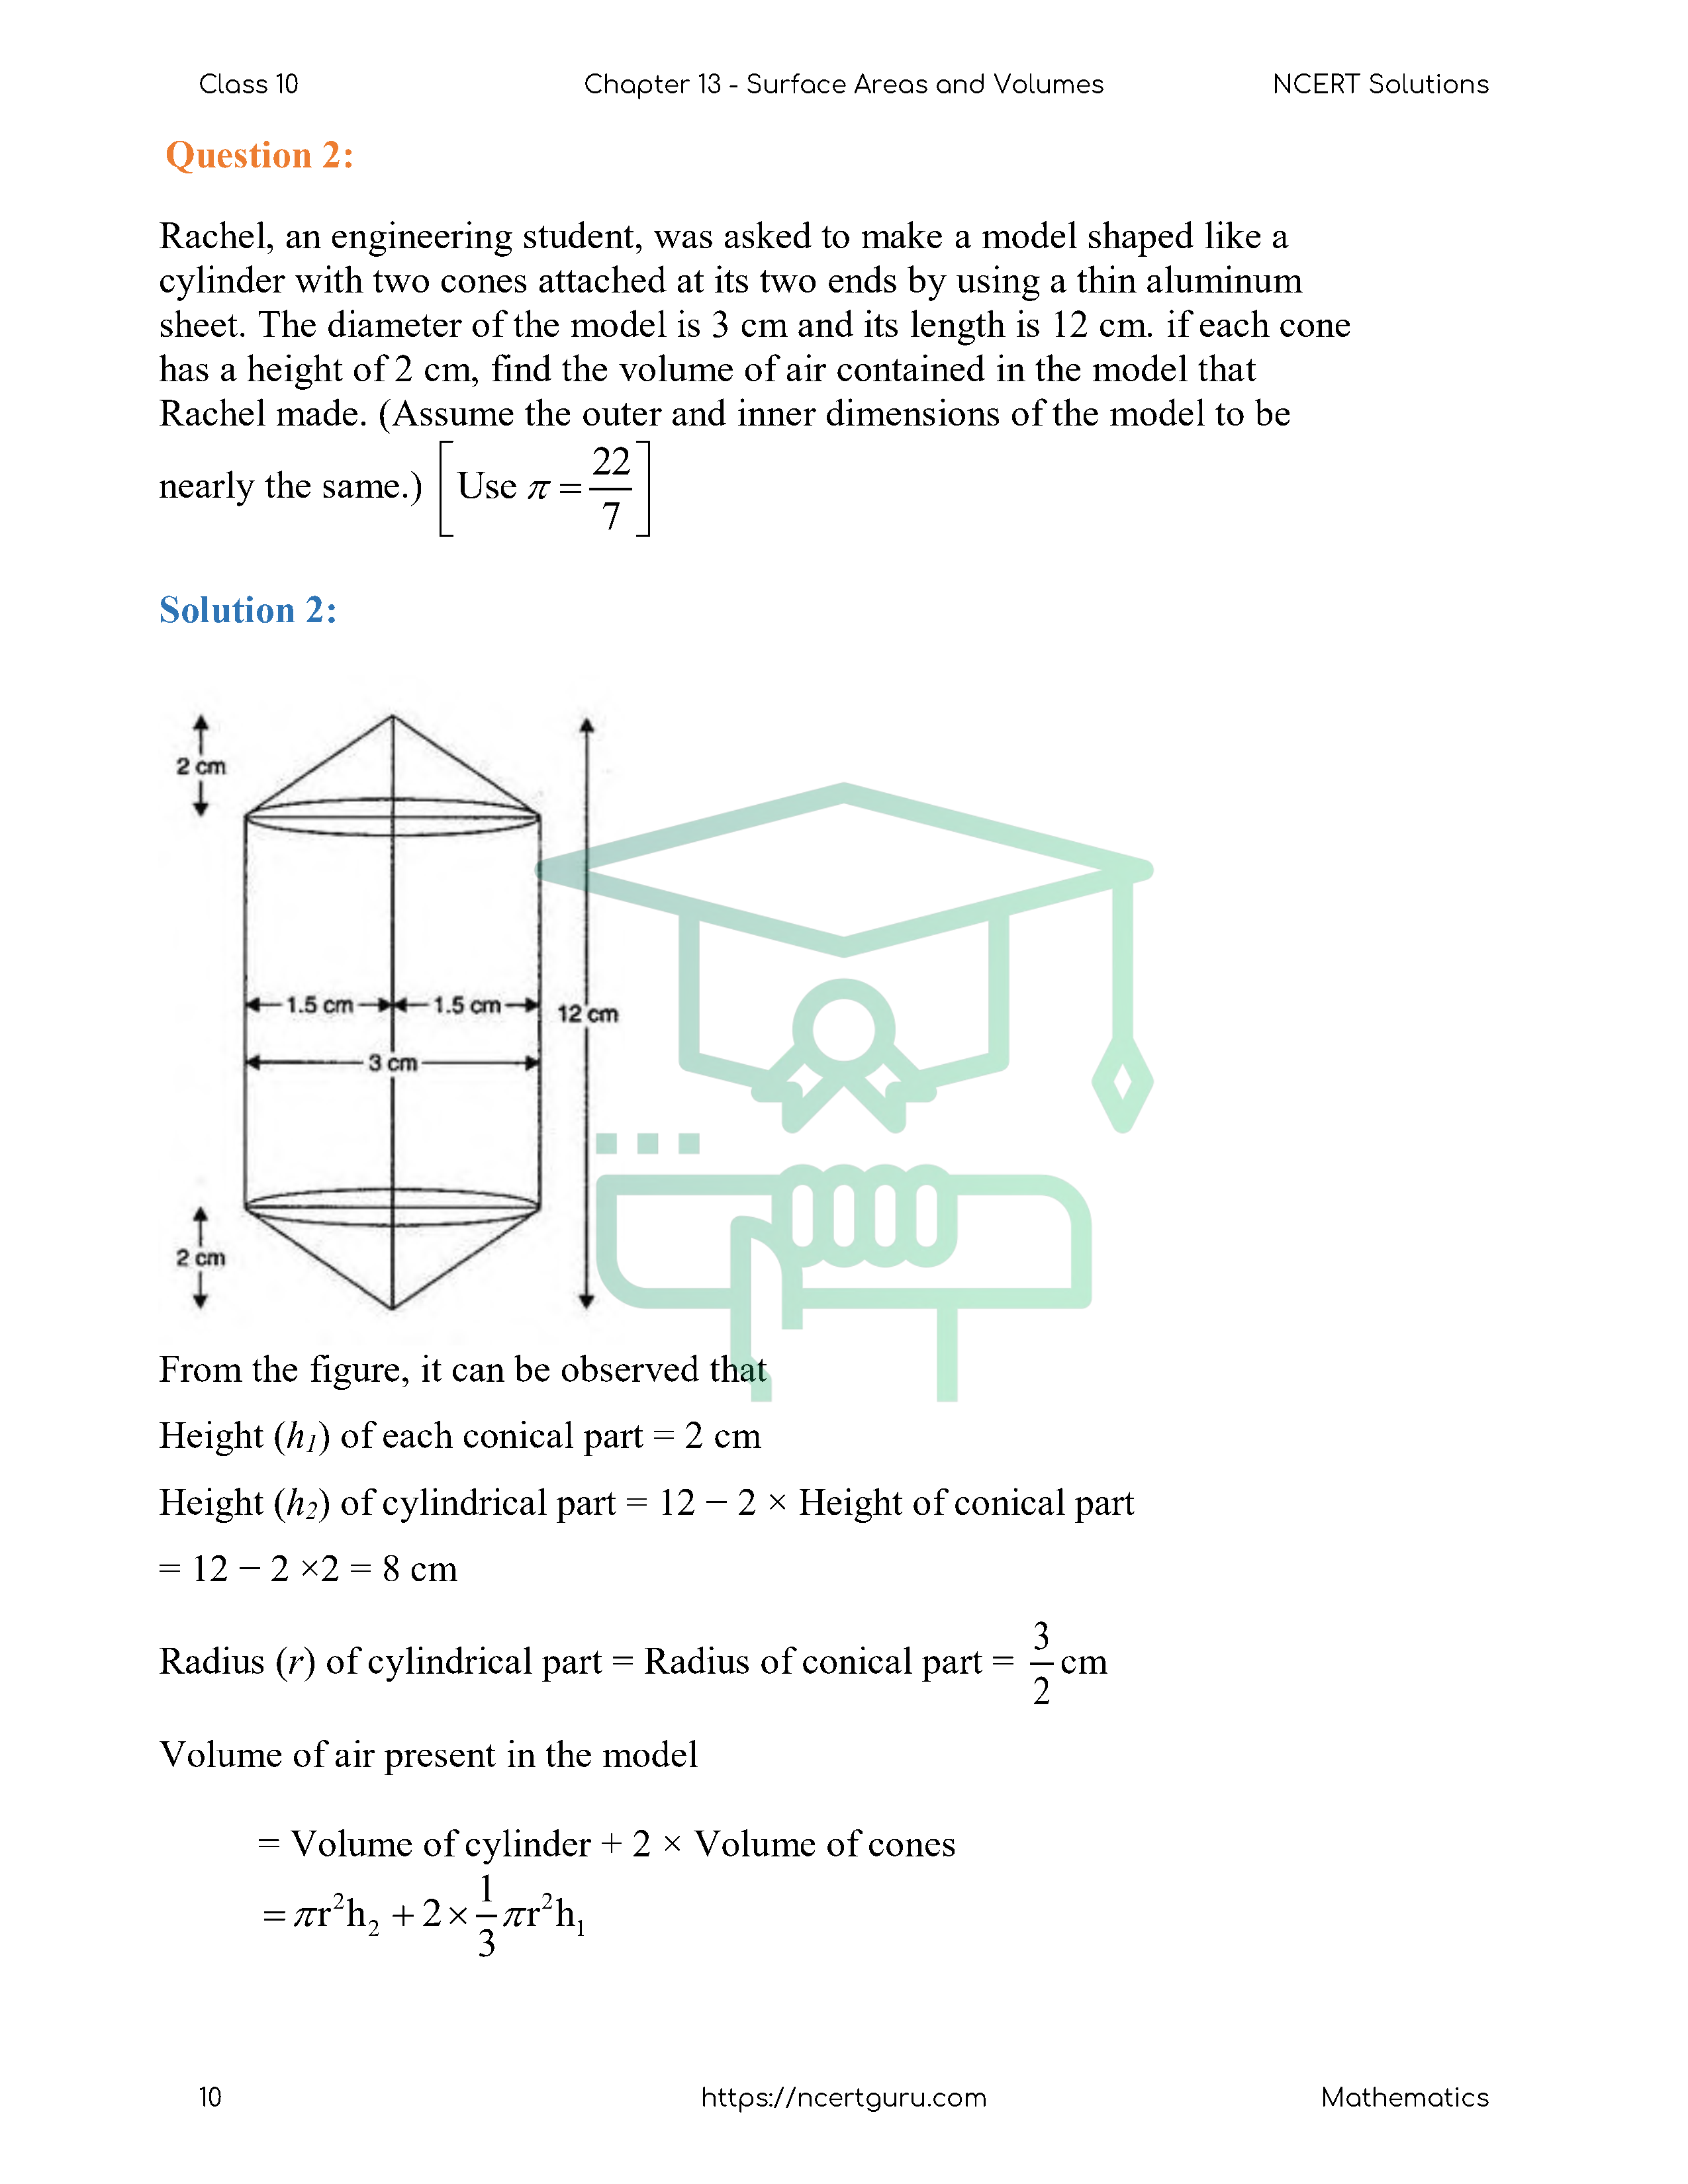 NCERT Solutions for Class 10 Maths Chapter 13